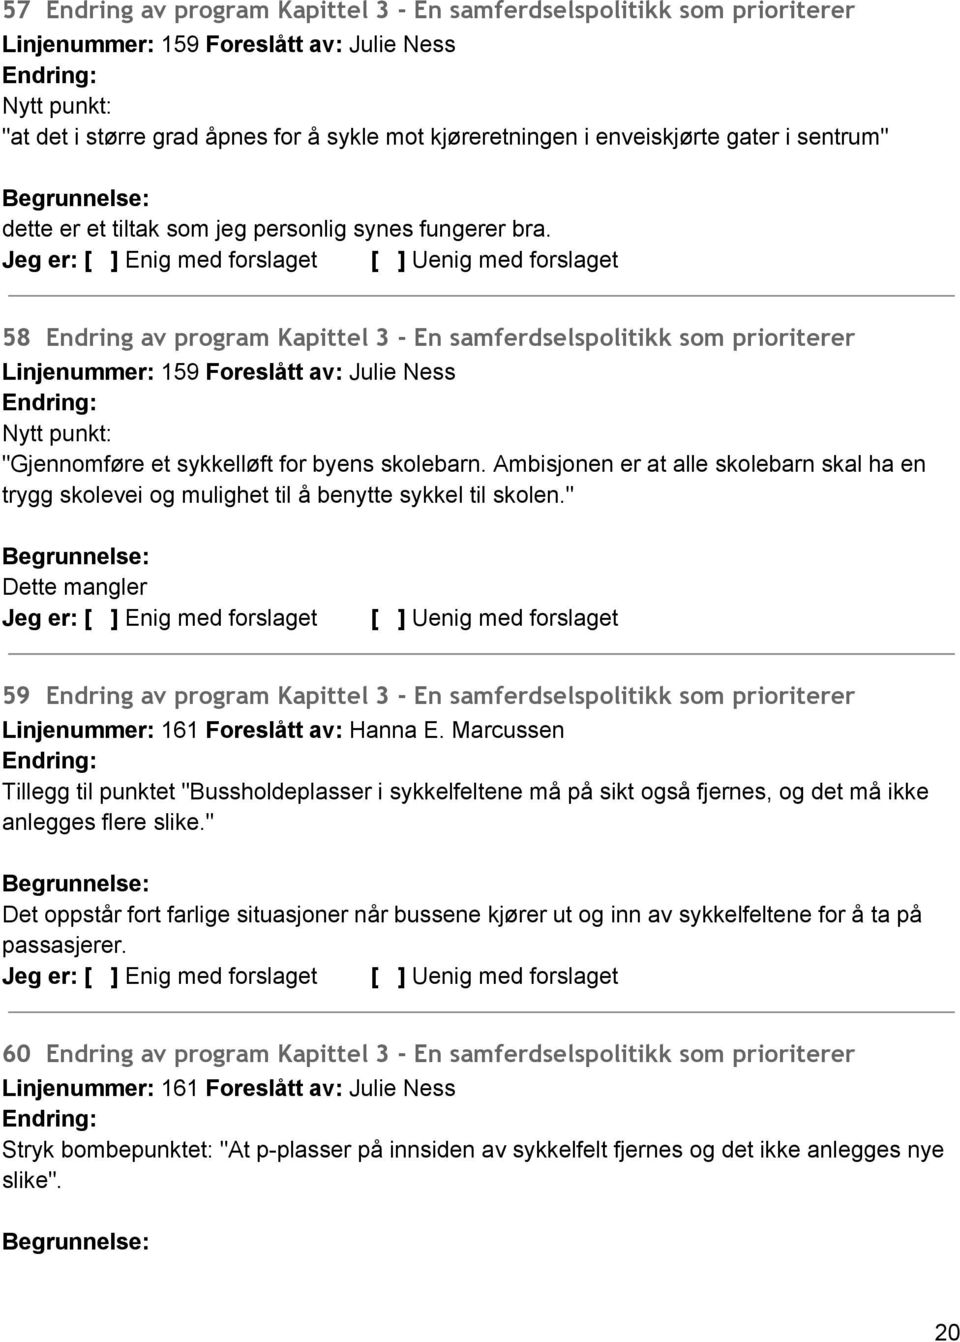 58 Endring av program Kapittel 3 - En samferdselspolitikk som prioriterer Linjenummer: 159 Foreslått av: Julie Ness Nytt punkt: "Gjennomføre et sykkelløft for byens skolebarn.